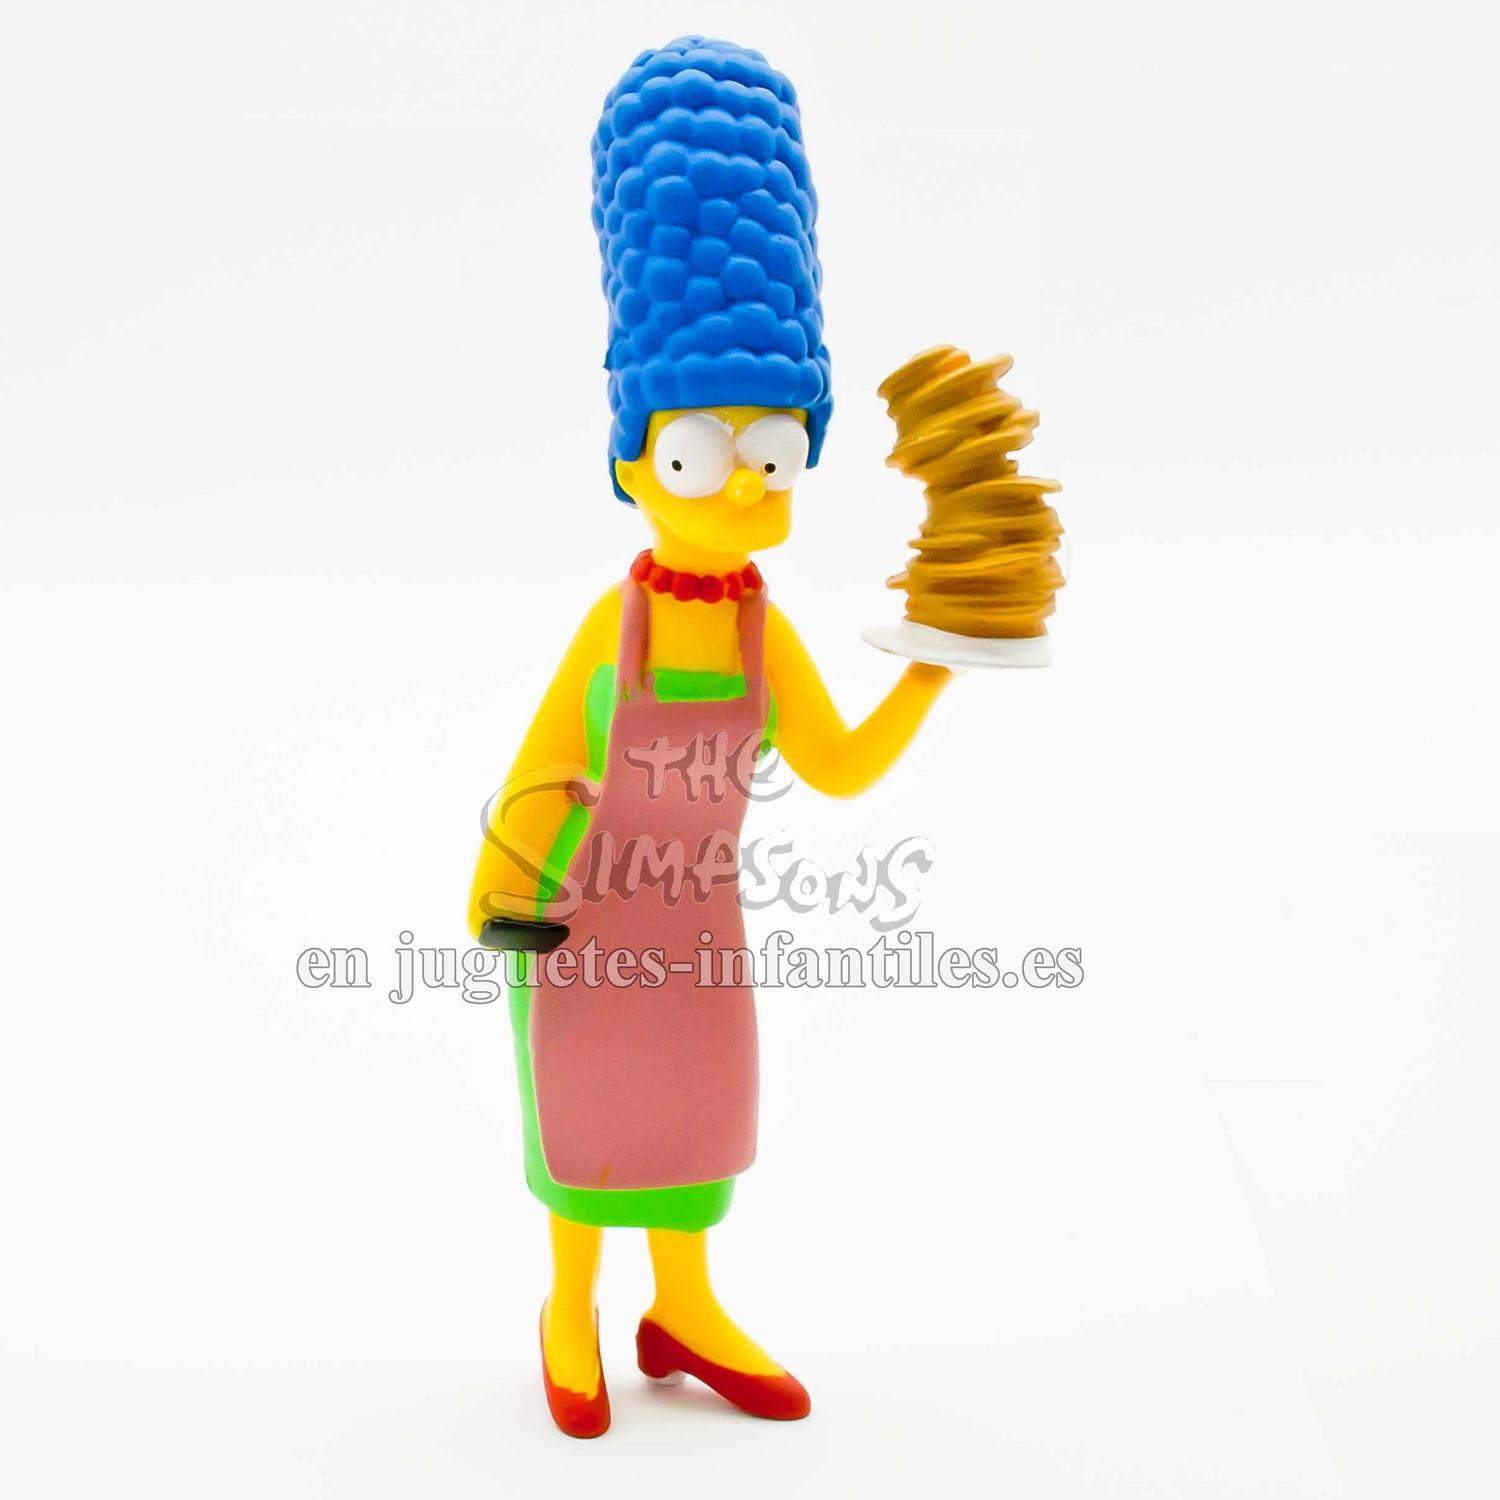 Foto Marge Simpson Los Simpsons Figura